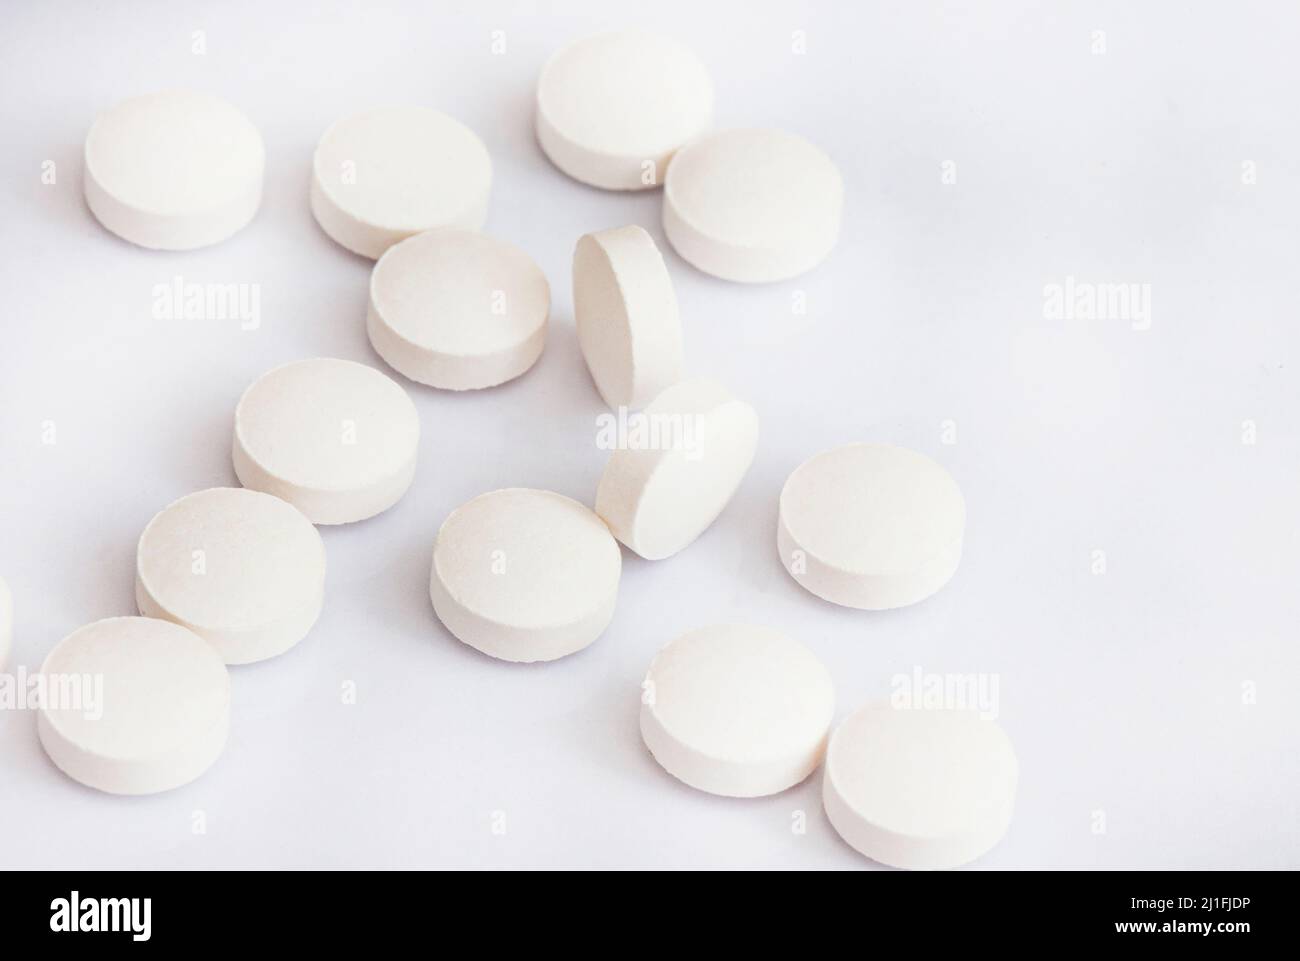 tabletas blancas de medicina o píldoras en la superficie blanca en el estudio que se disparó con espacio de copia Foto de stock